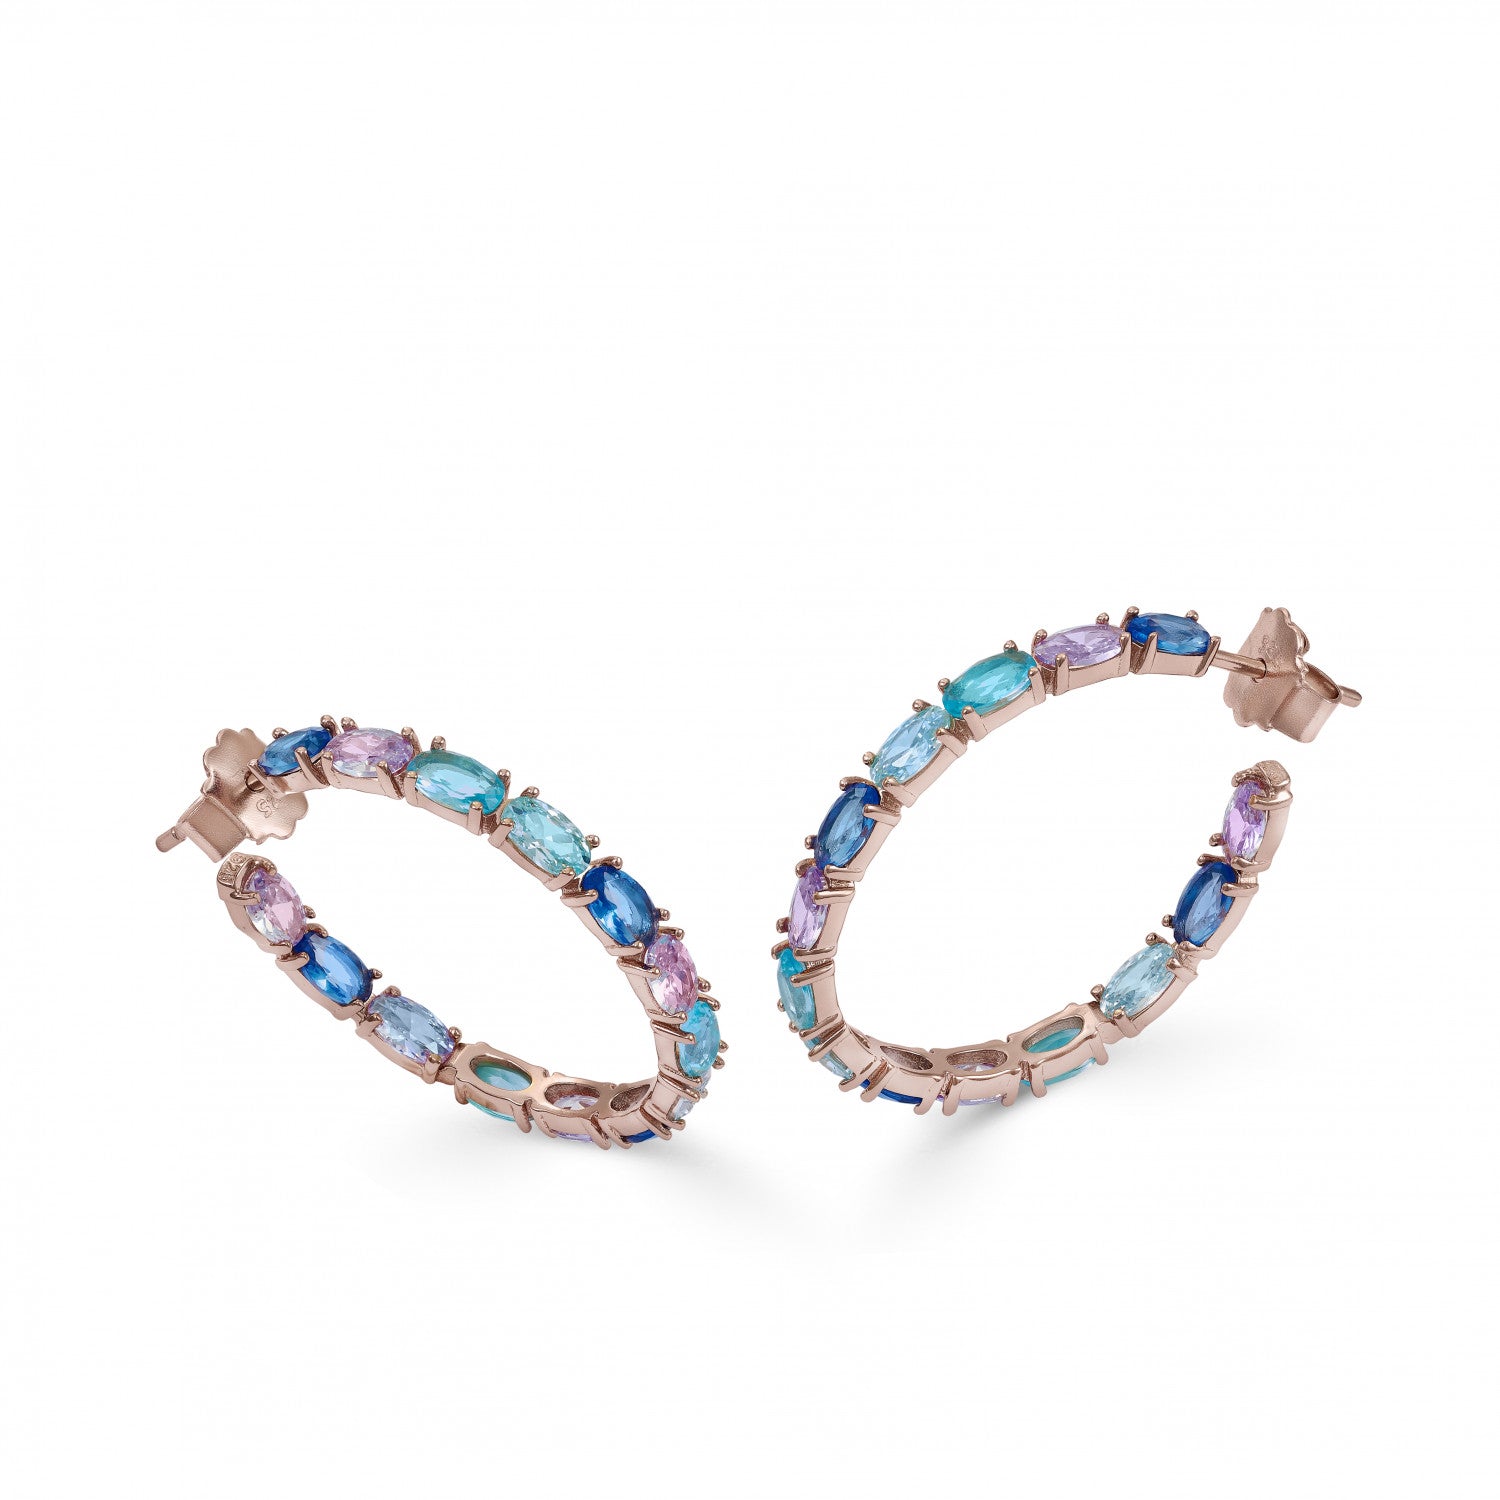 Pendiente · Pendientes aros con piedras de talla oval en tonos azules